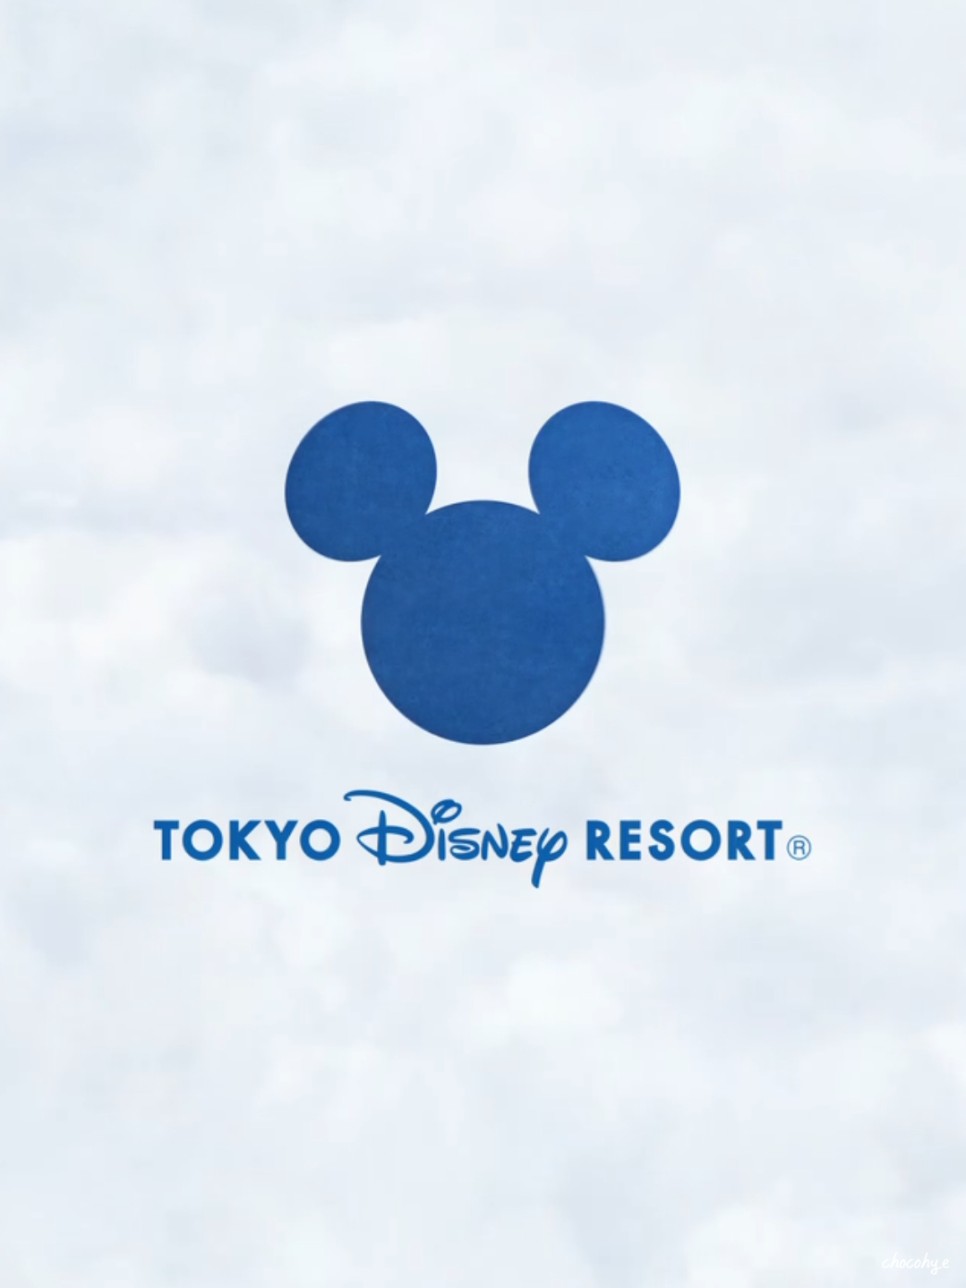 일본 도쿄 디즈니씨 가는법 입장권 특가 정리